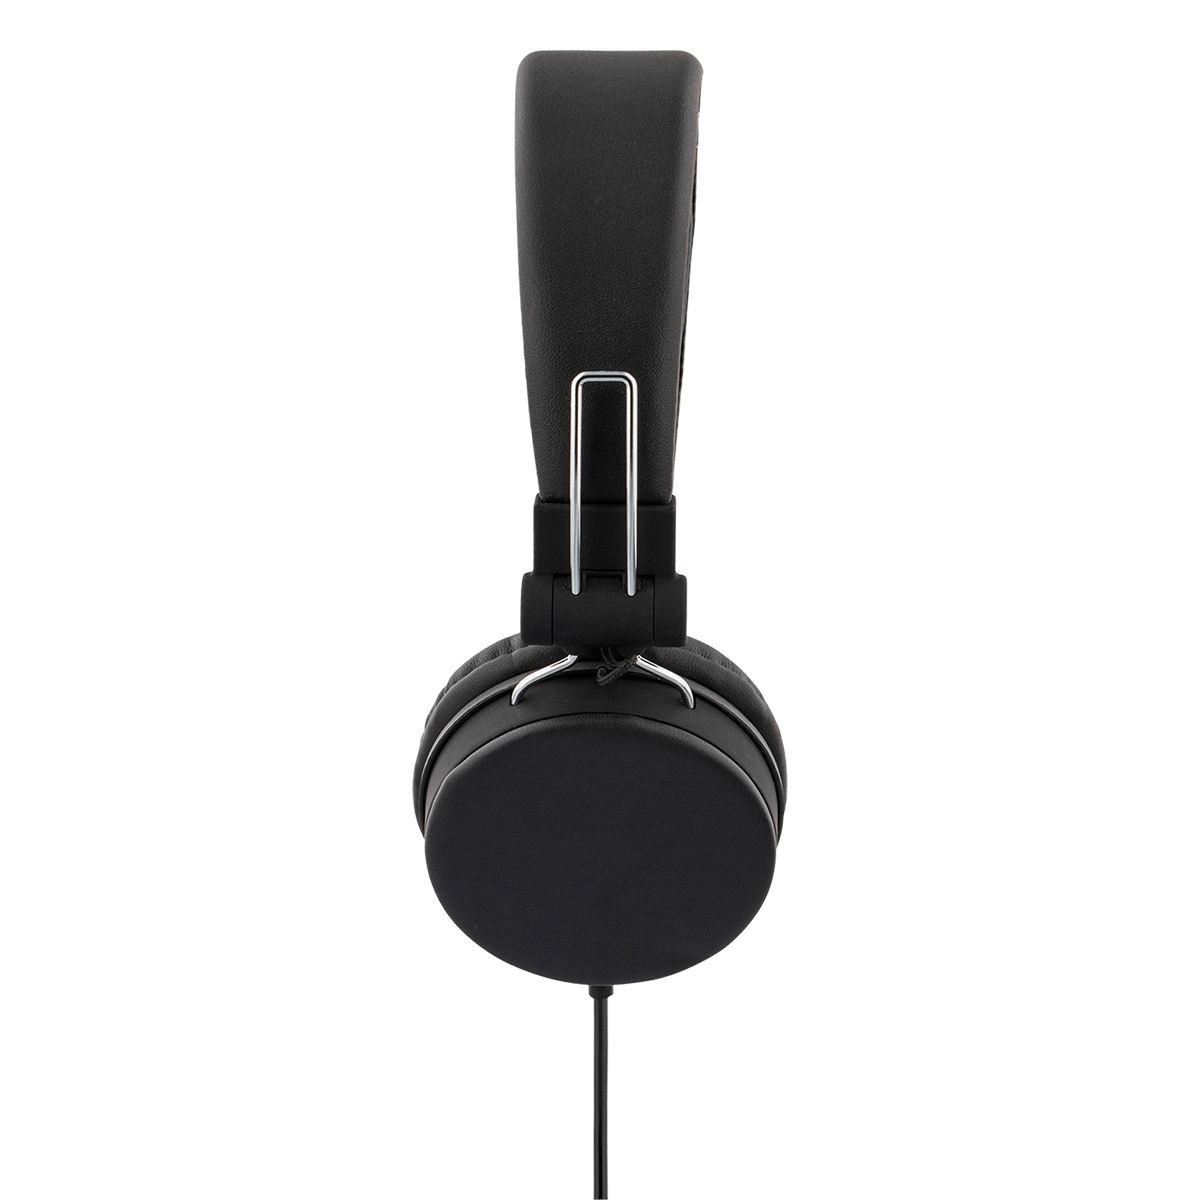 STREETZ vikbara hörlurar med mikrofon, 3.5mm, 1.5m, svart